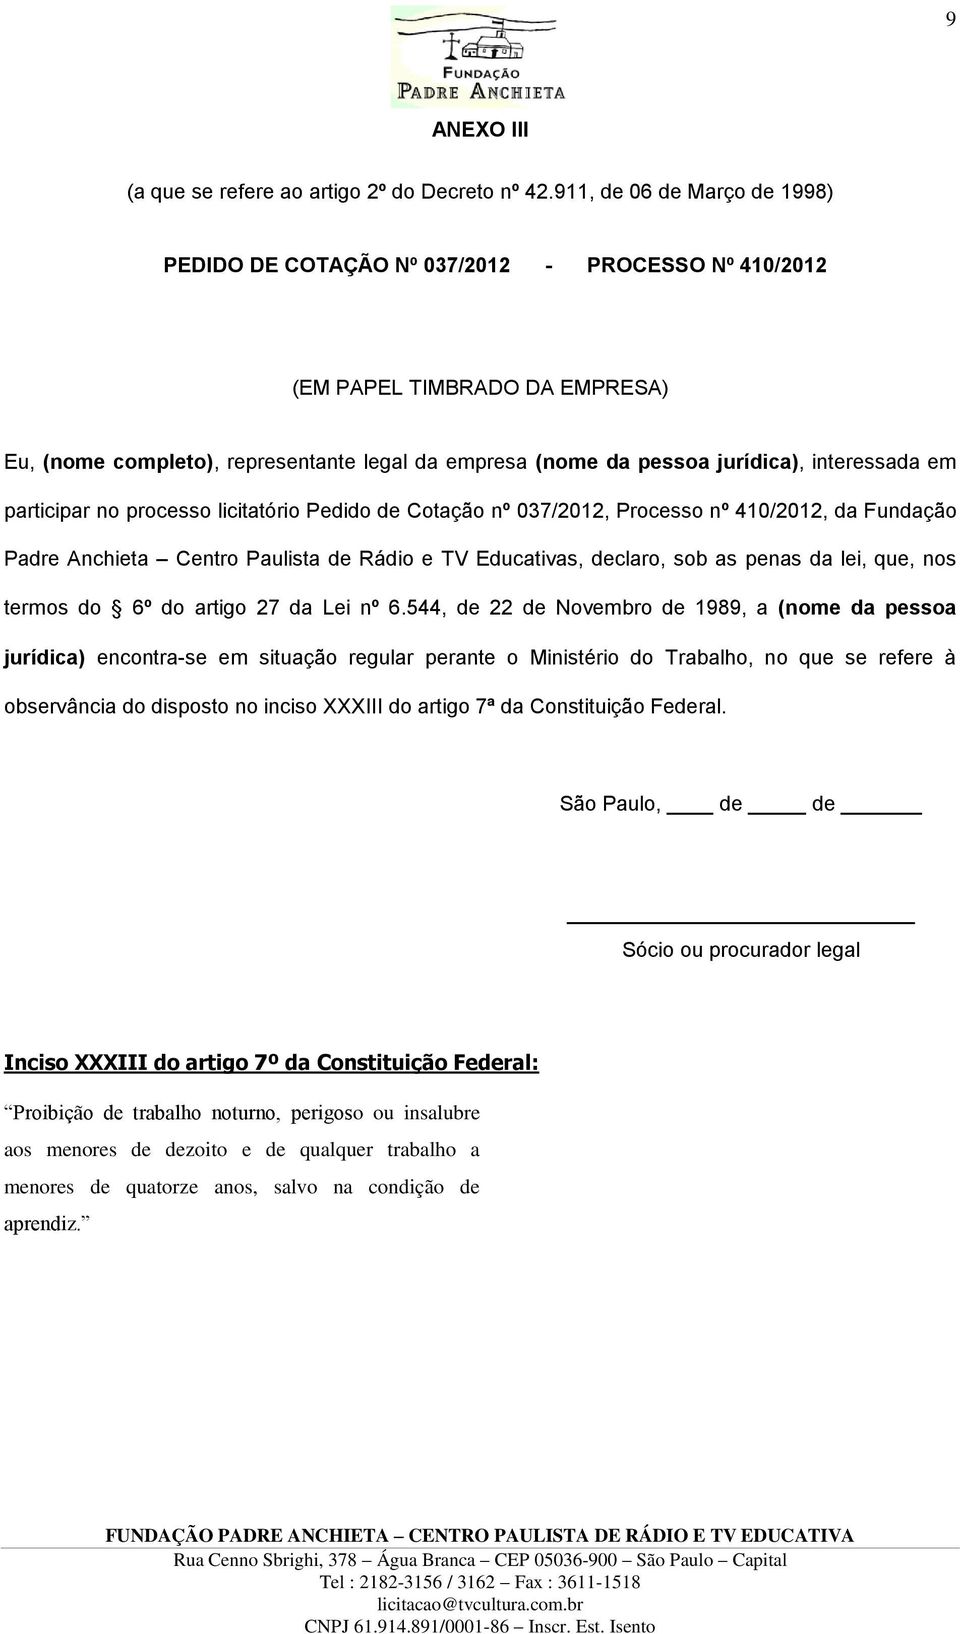 interessada em participar no processo licitatório Pedido de Cotação nº 037/2012, Processo nº 410/2012, da Fundação Padre Anchieta Centro Paulista de Rádio e TV Educativas, declaro, sob as penas da